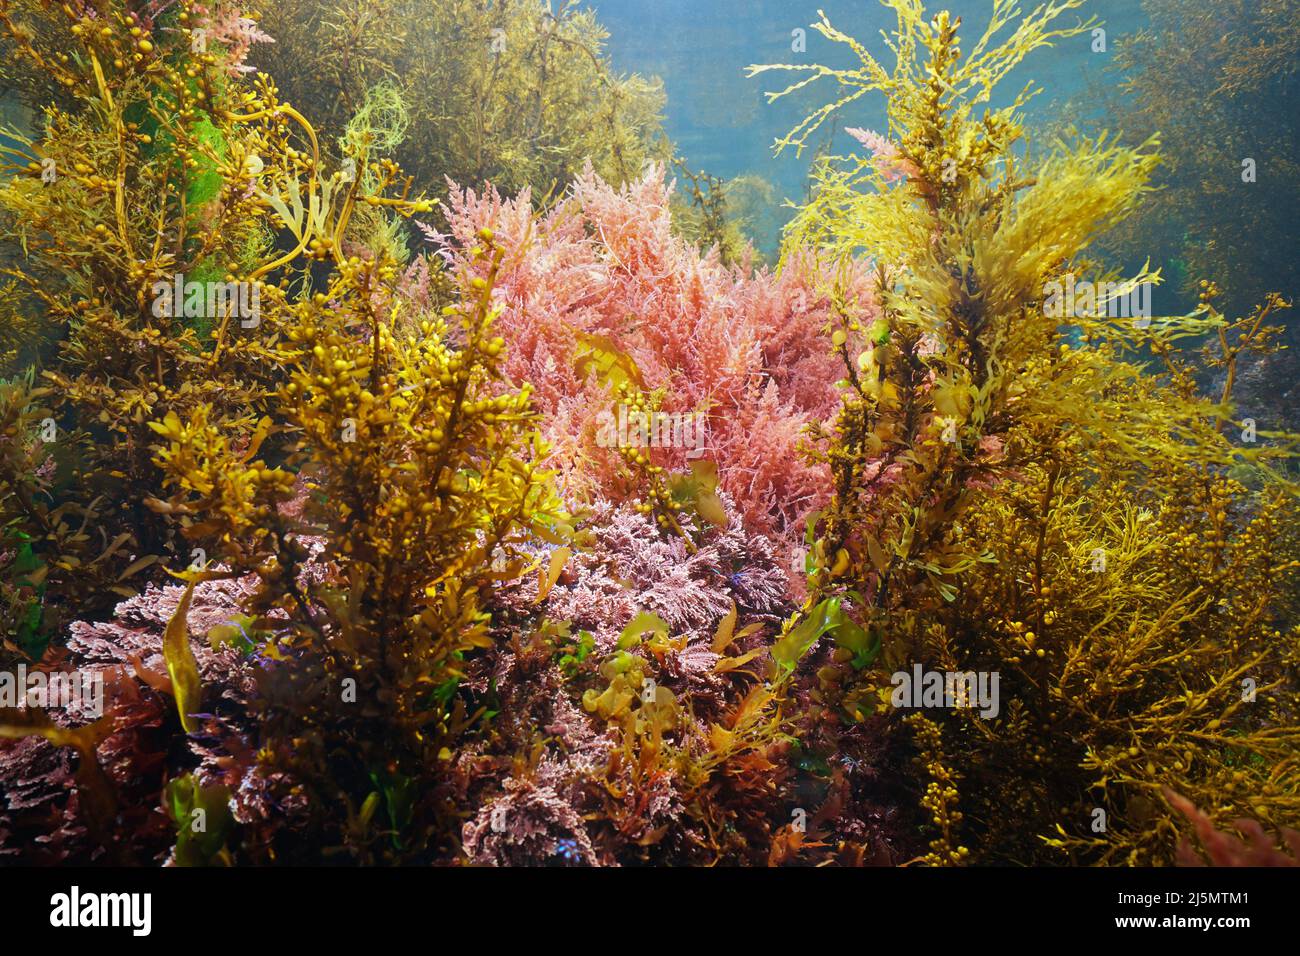 Varie alghe marine sott'acqua nell'oceano, alghe dell'Atlantico orientale, Spagna Foto Stock